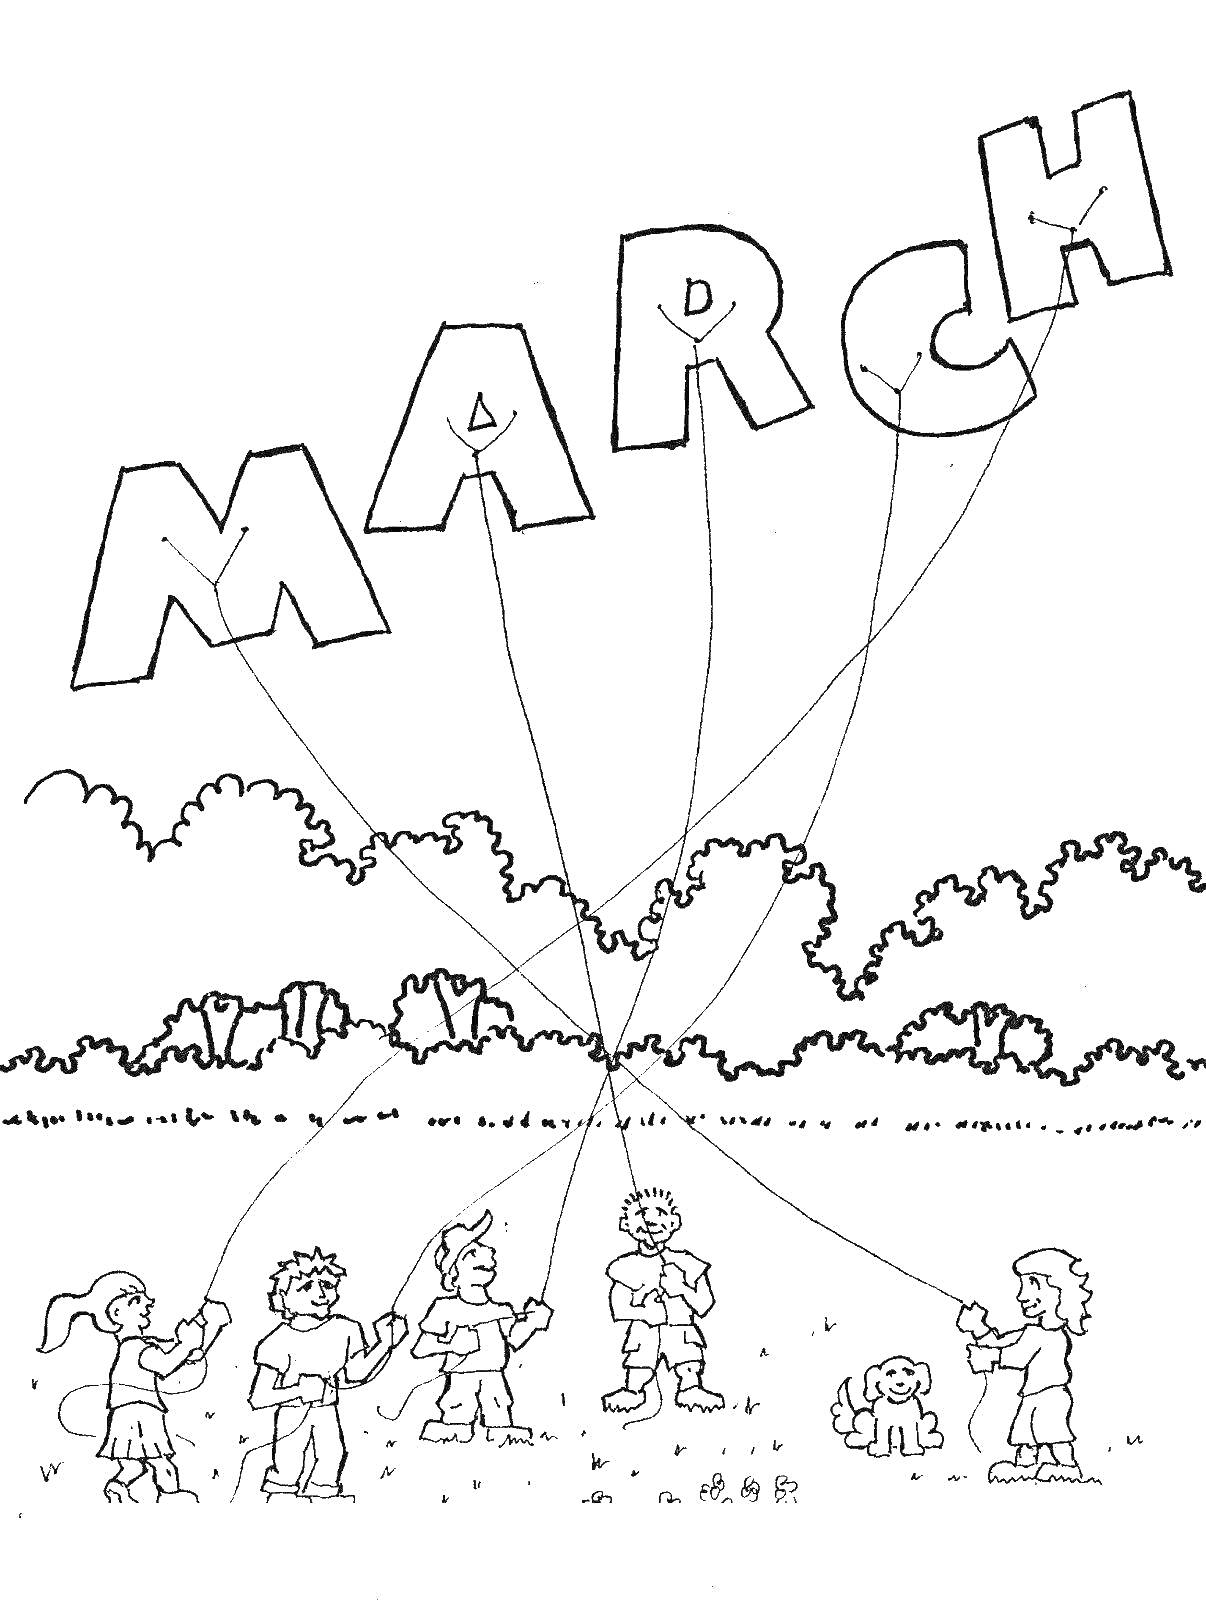 Раскраска Март с детьми, запускающими воздушных змеев на природе